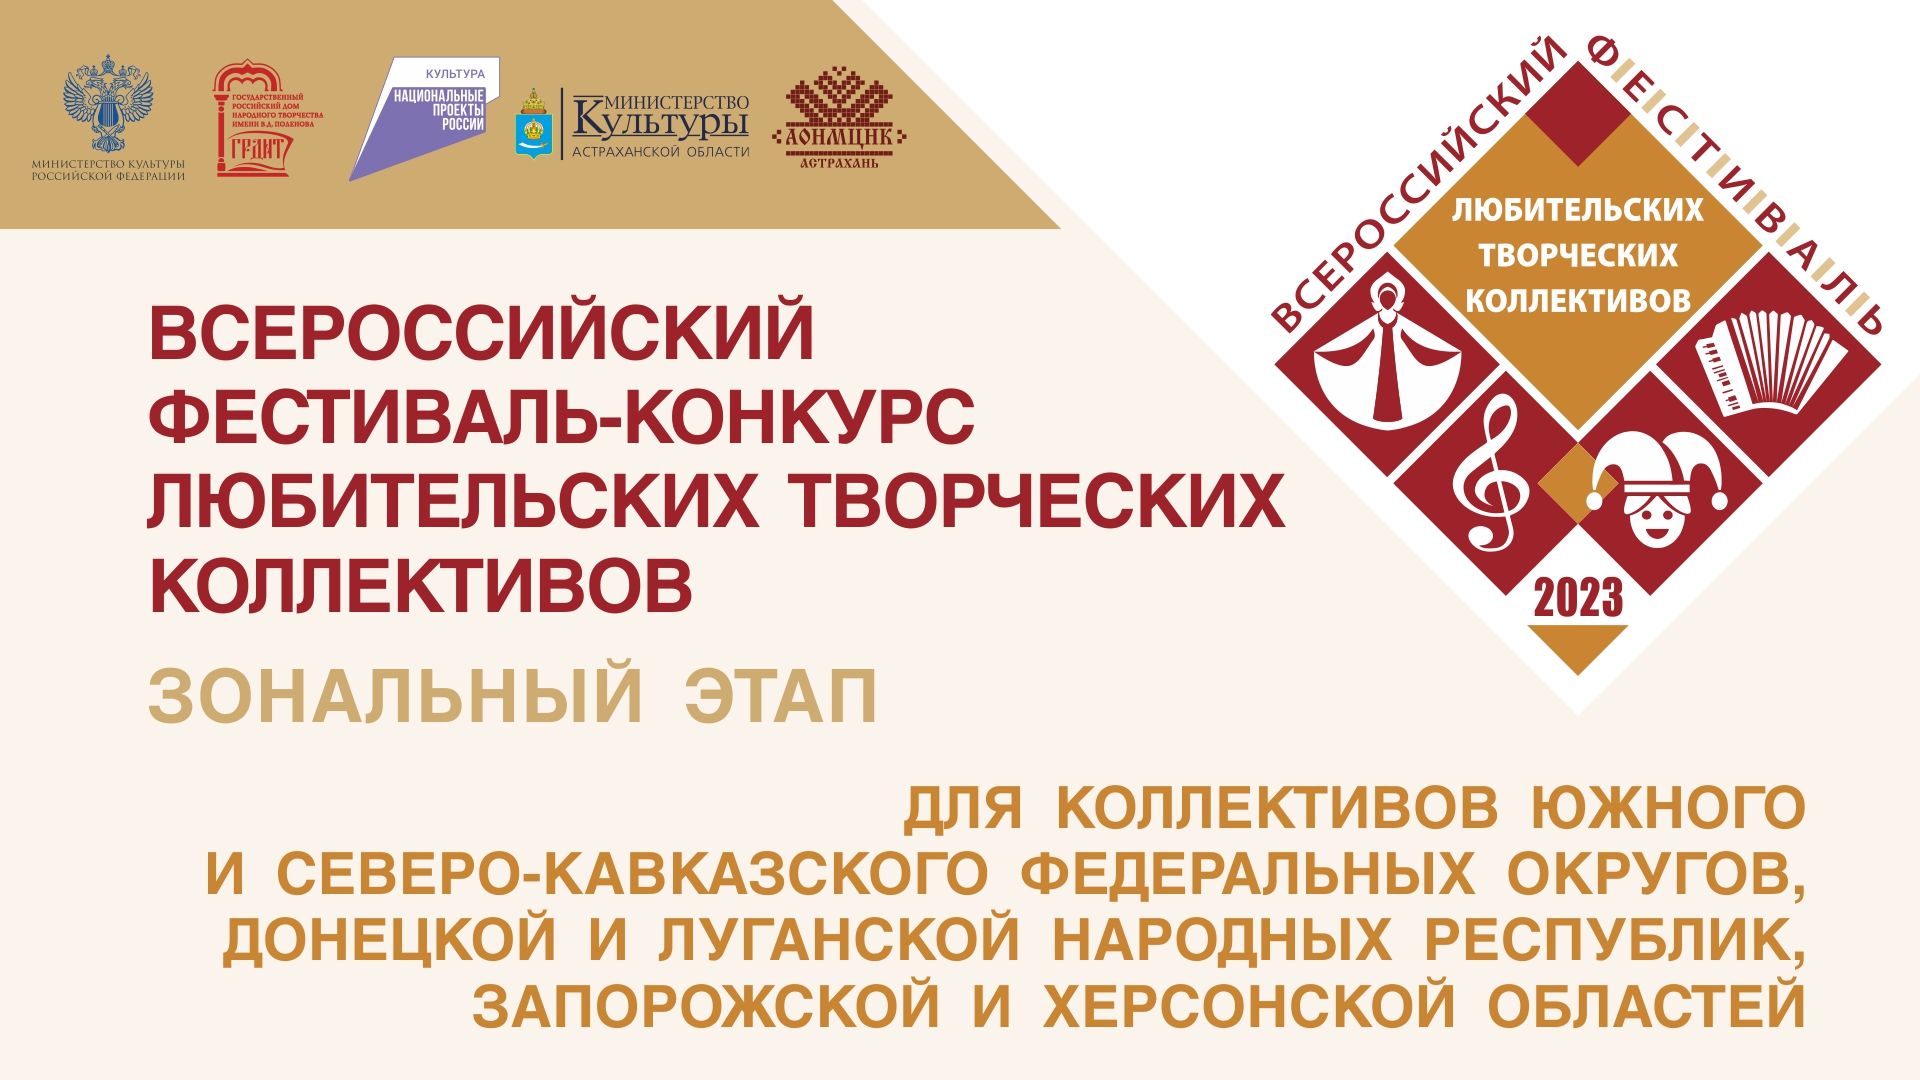 Астрахань встречает Всероссийский фестиваль любительских творческих коллективов